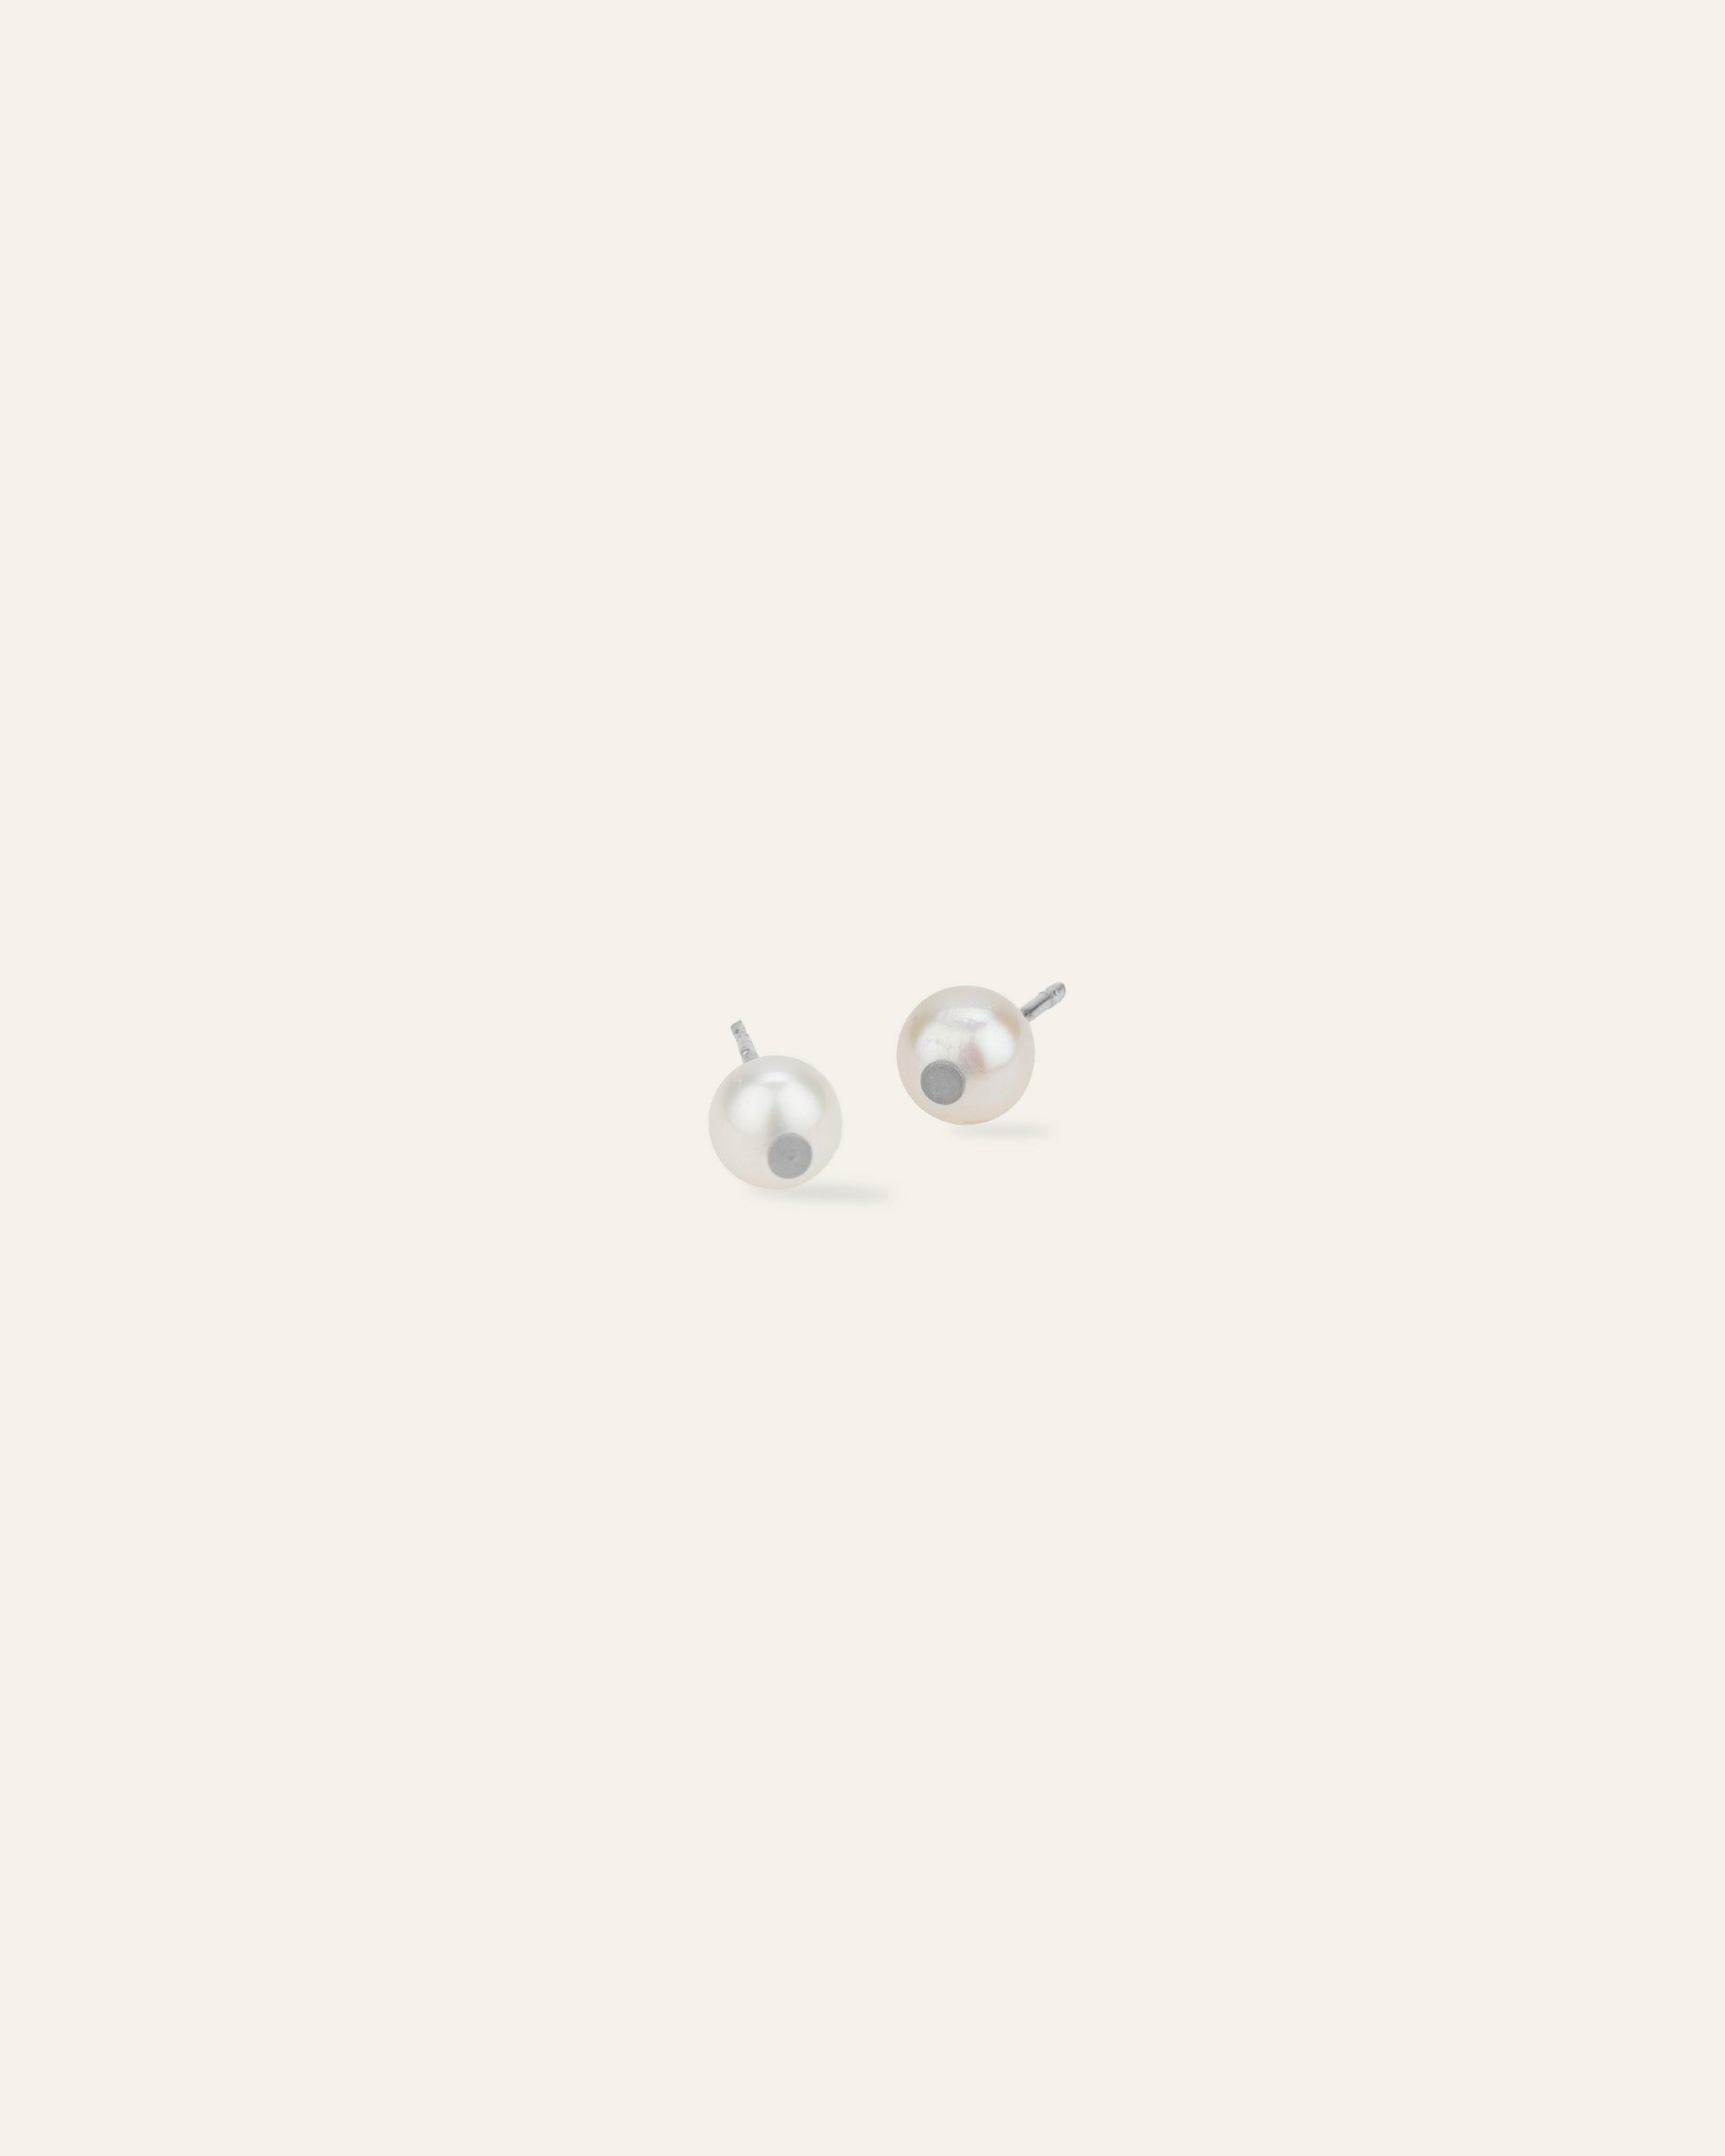 Elegance silver and pearl stud earrings